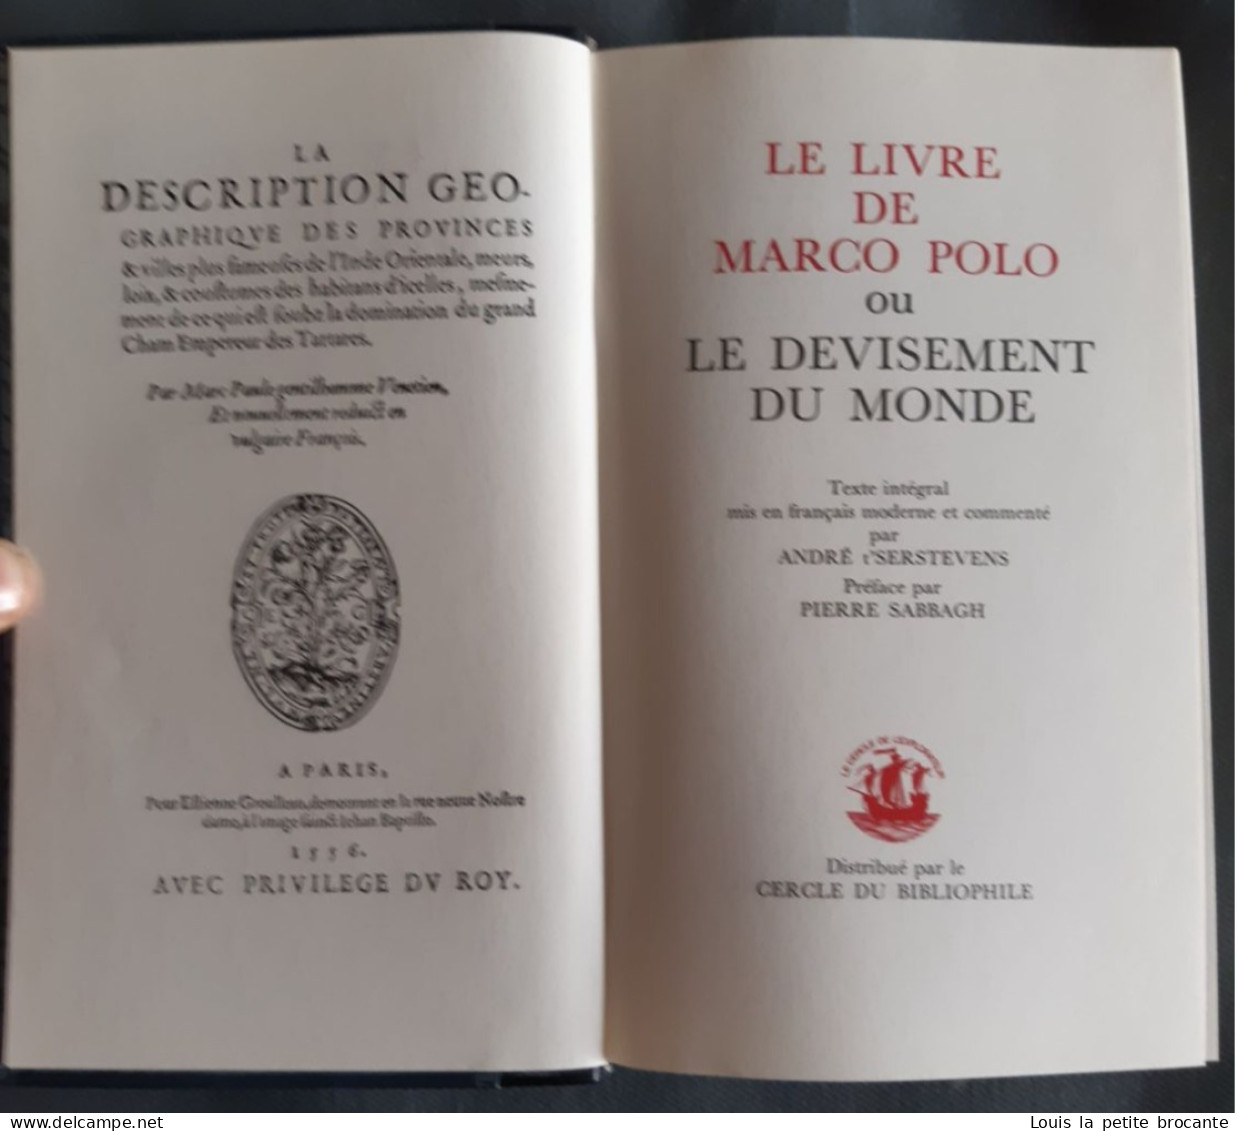 lot de 21 livres sur les explorateusr et aventuriers, éditions Edito Service S.A. Genève.